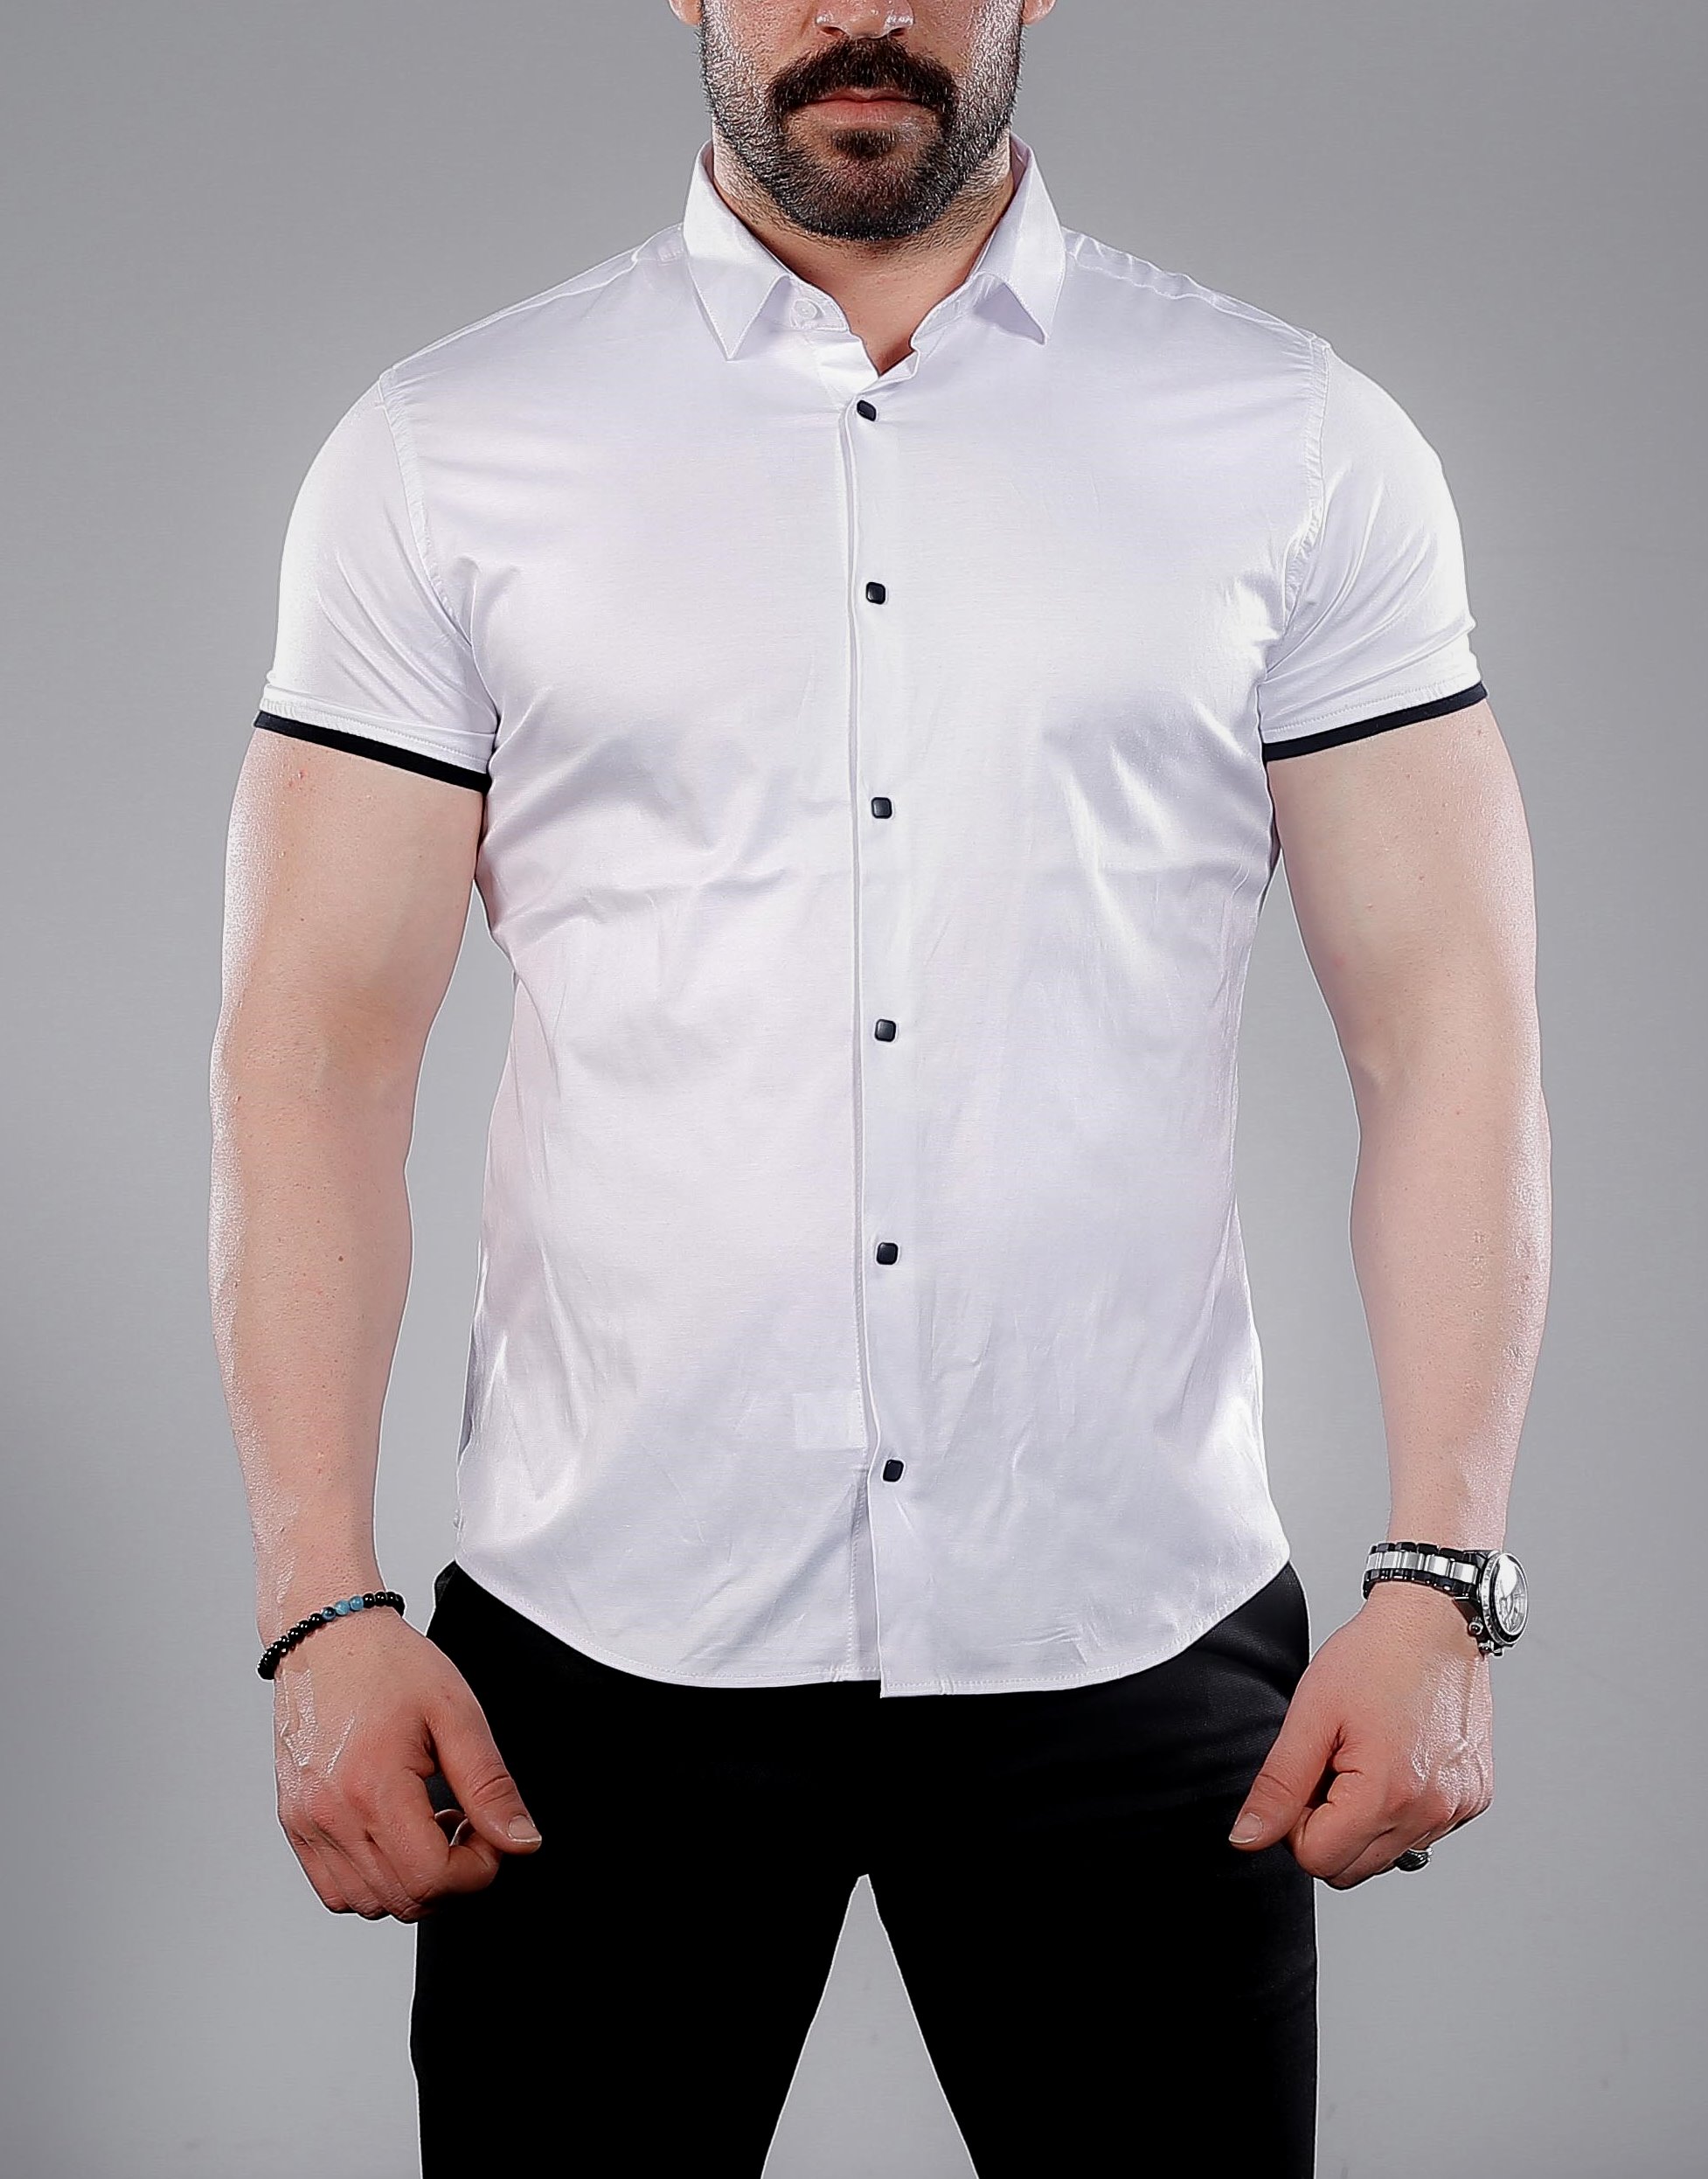 Рубашка с коротким рукавом. Мужские рубашки 2022. Мужская белая рубашка. Рубашка с коротким рукавом мужская. Белая рубашка с коротким рукавом мужская.